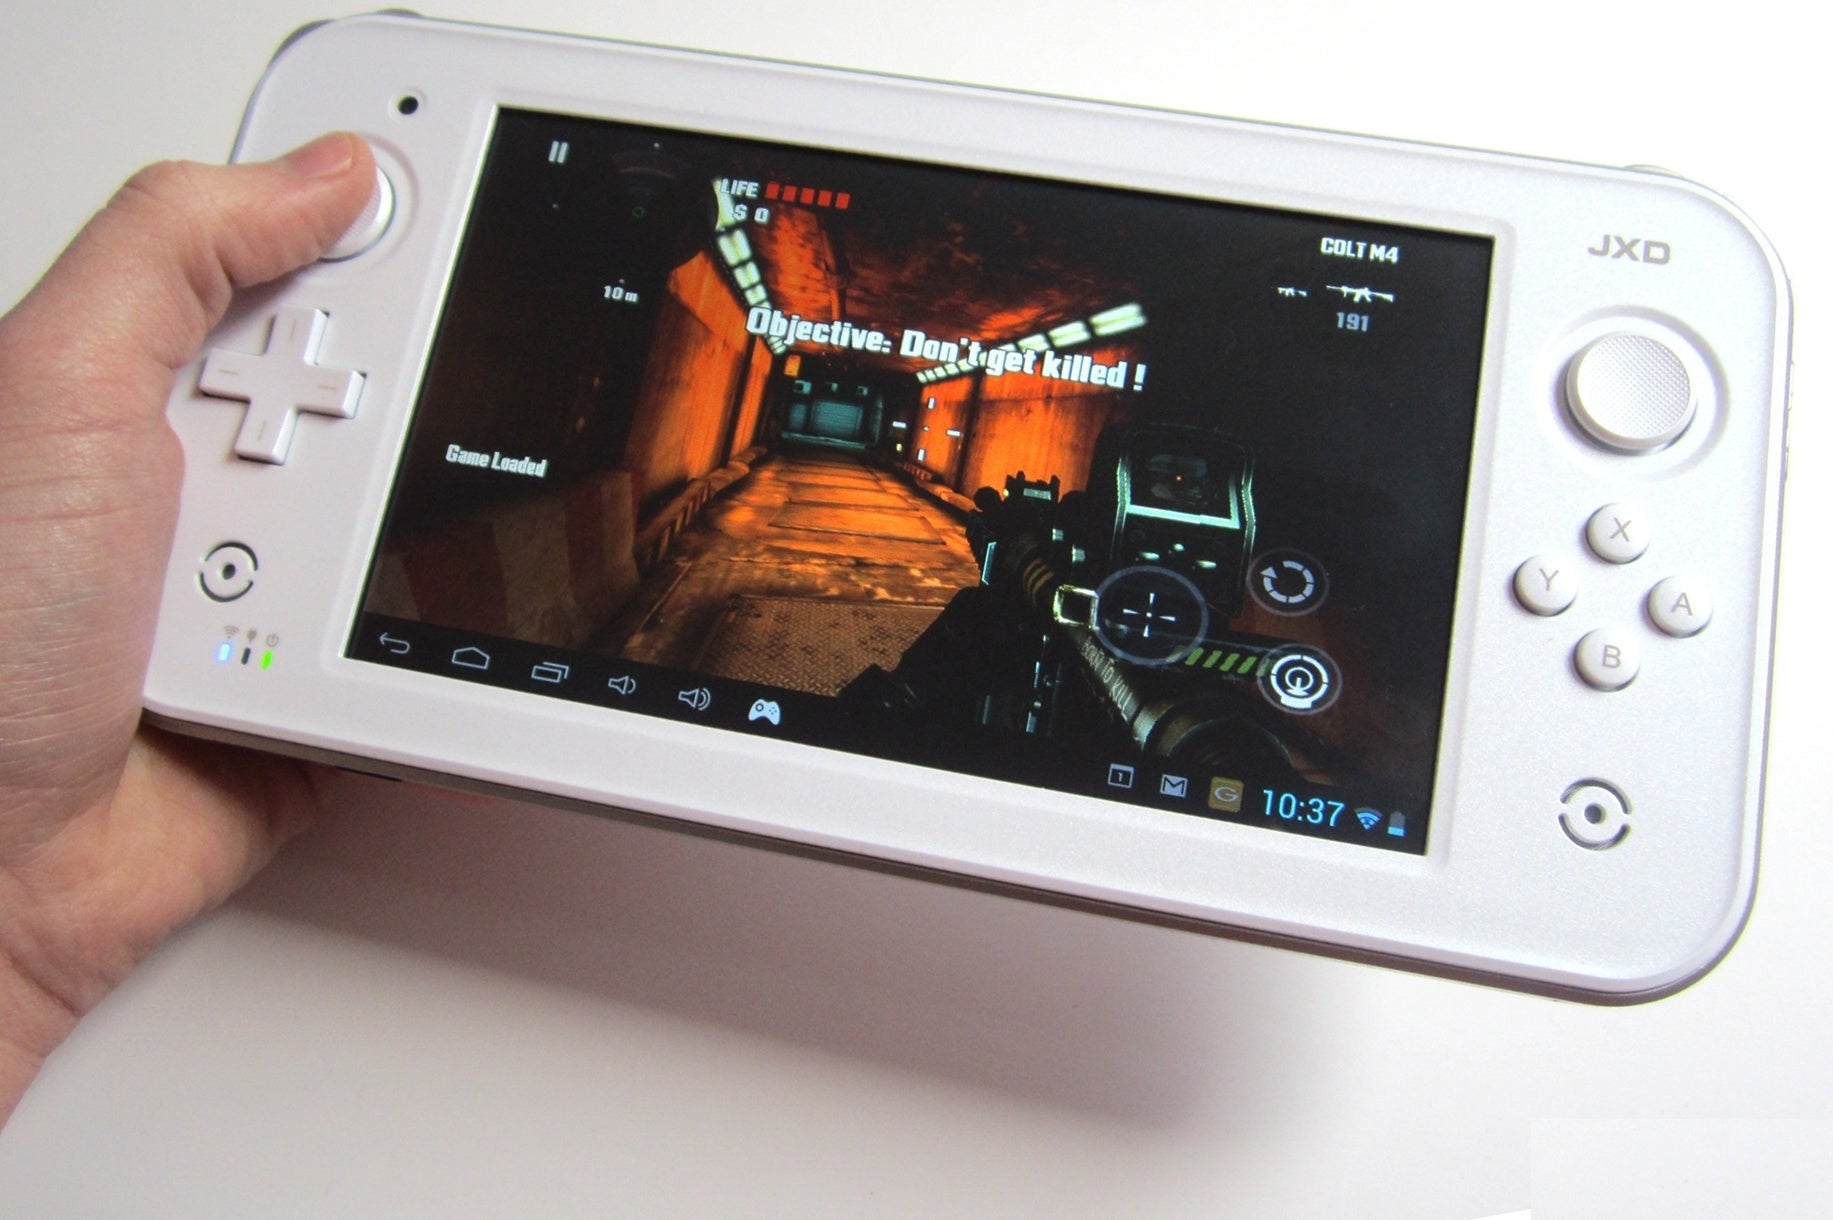 Imagem para Wii U GamePad clonado - análise ao Android JXD S7300